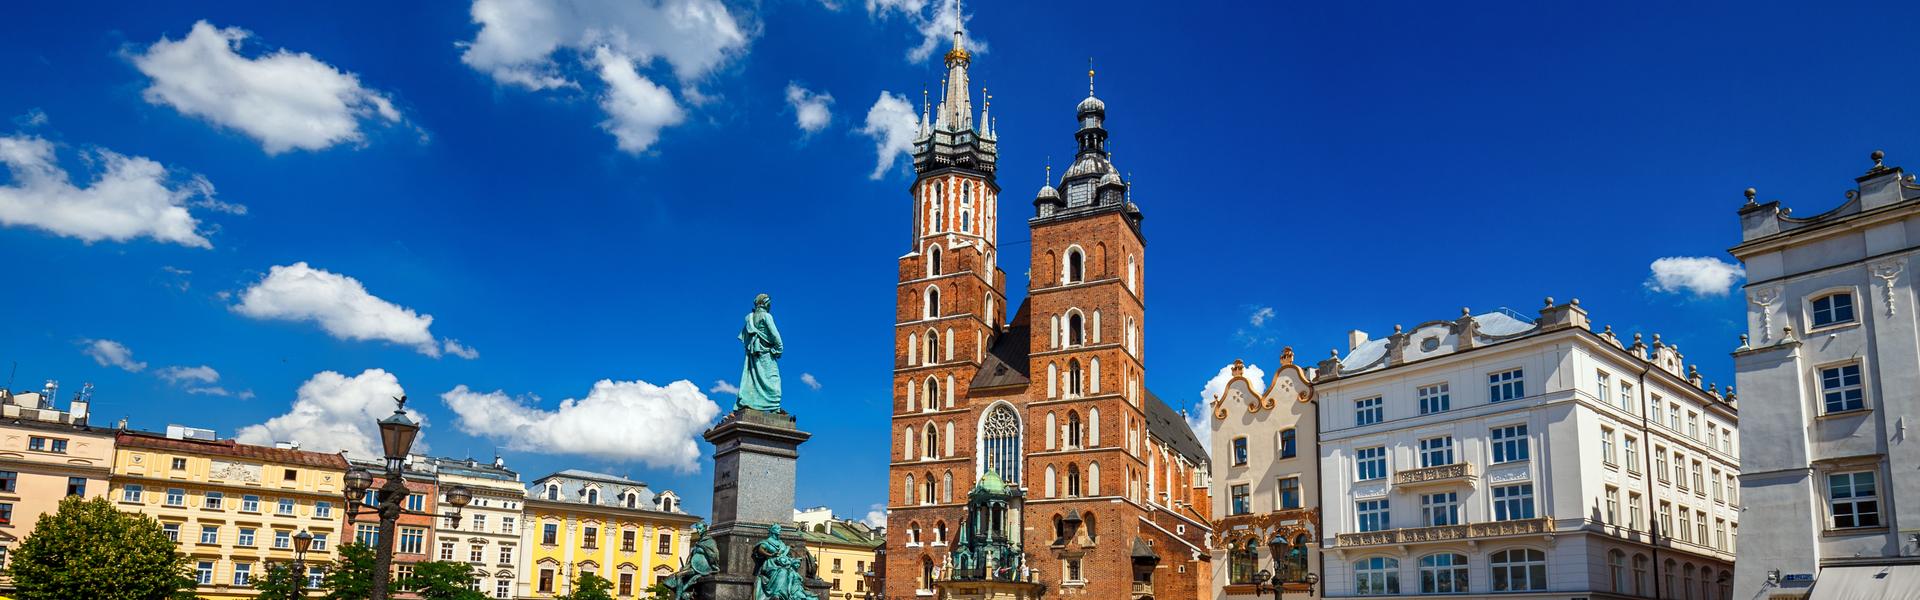 Rynek Główny w Krakowie z Kościołem Mariackim w centralnym miejscu